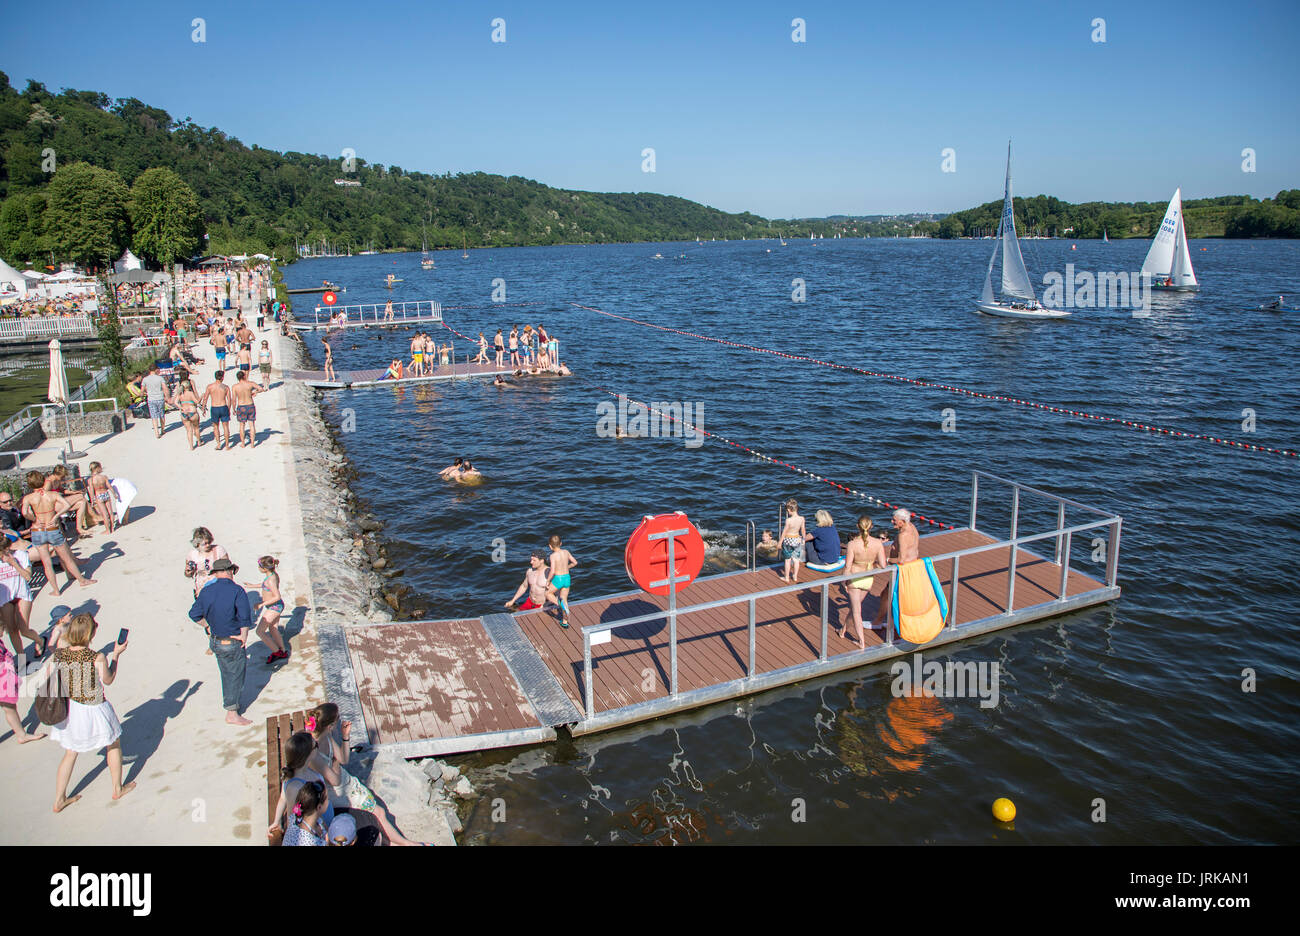 Después de una prohibición de bañarse en el río Ruhr, en el lago Baldeneysee, en Essen, Alemania, después de 46 años de prohibición de baño, se puede bañar de nuevo, oficialmente, en Foto de stock